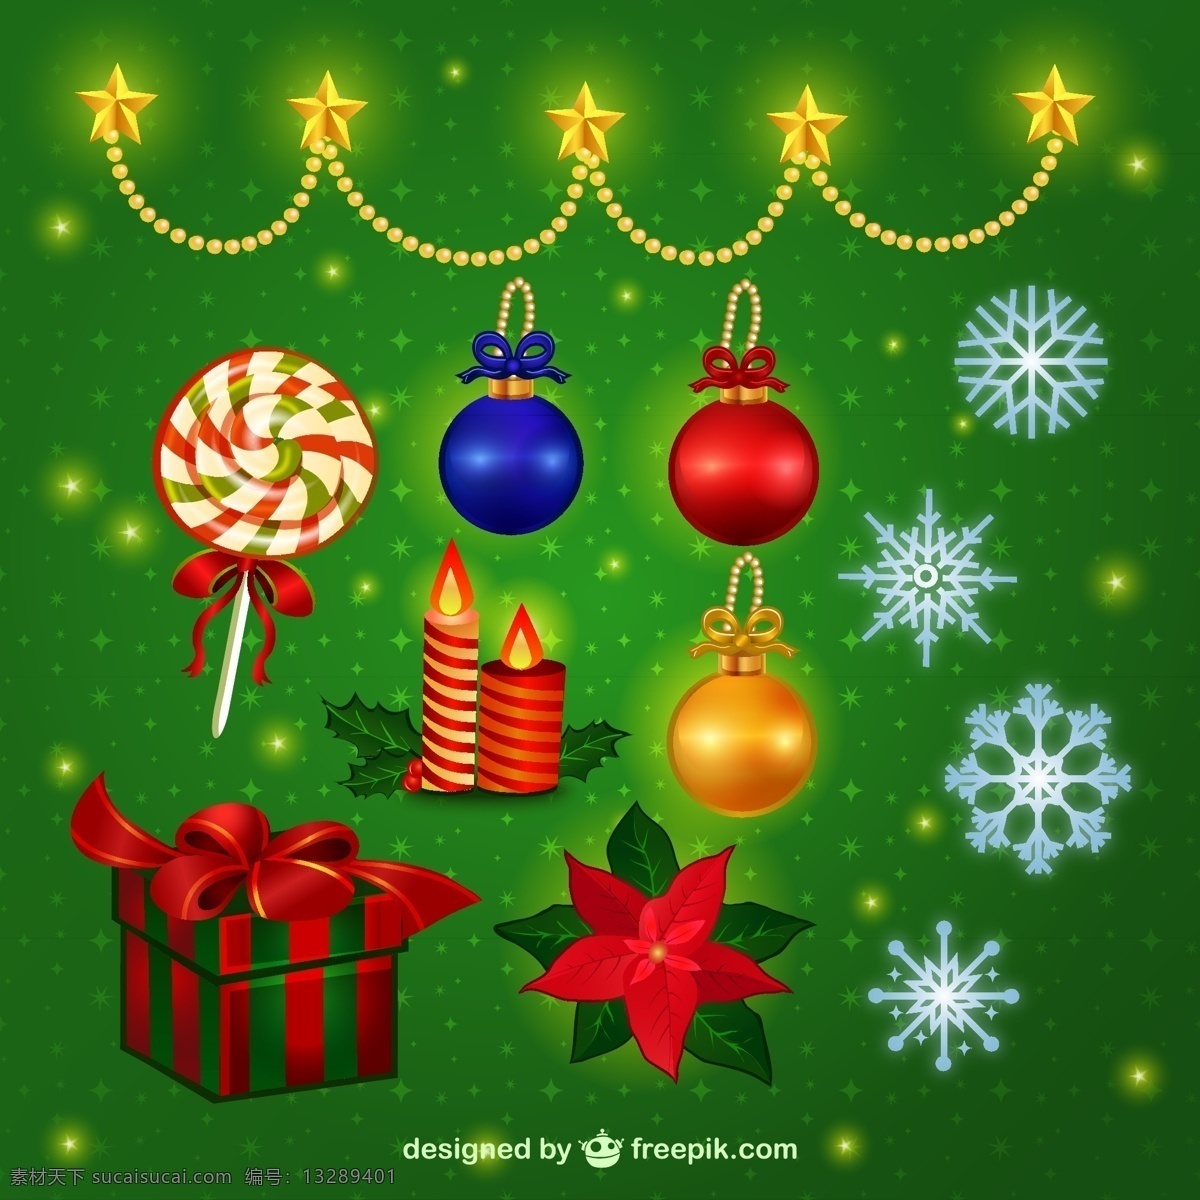 丰富多彩 圣诞饰品 包装 圣诞节装饰品 装饰 色彩丰富 装饰球 圣诞球 包 圣诞装饰 玩具 球 圣诞装饰品 装饰品 挂件 绿色